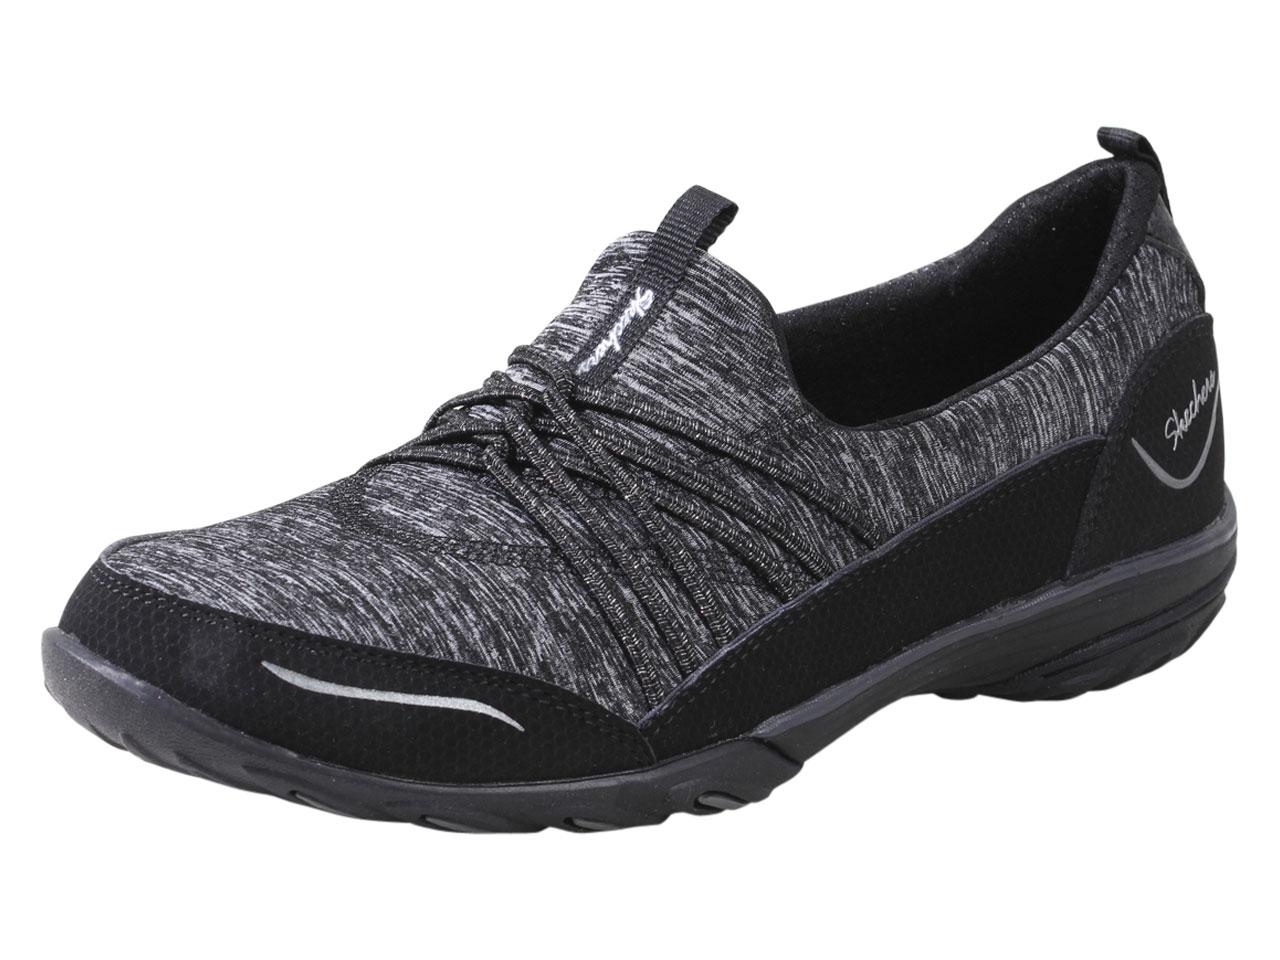 Skechers Women's Empress Solo Mood Memory Foam Loafers Shoes - Black - 8.5 B(M) US -  Empress - Solo Mood